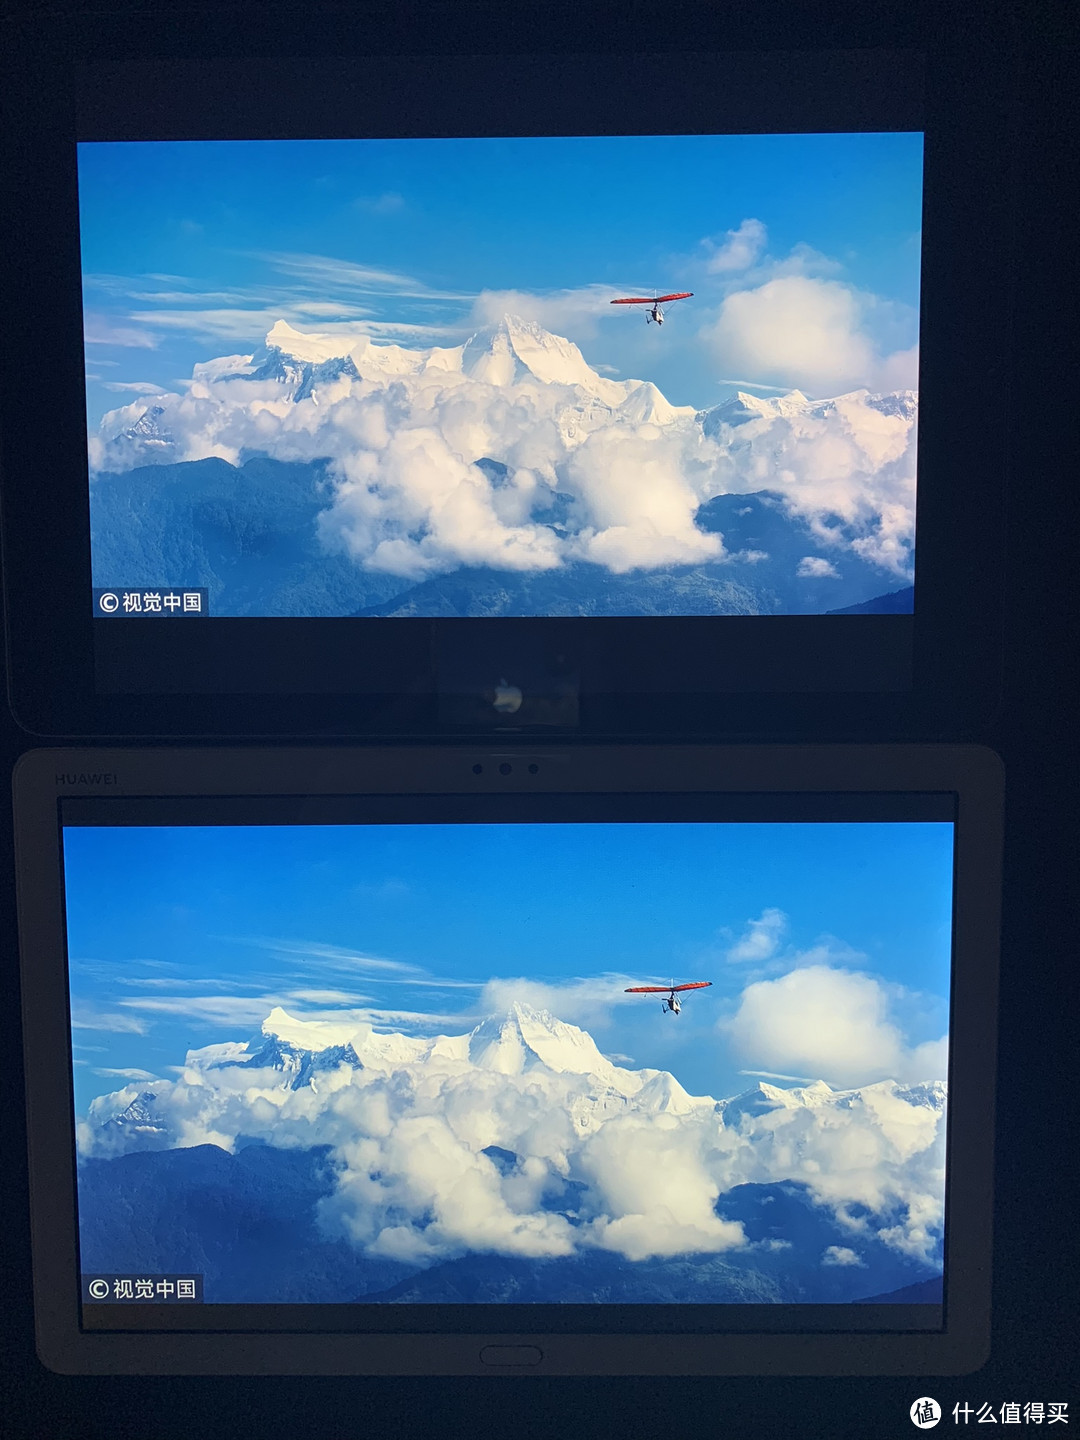 “智能居家”平板电脑： 华为平板 M5青春版 使用评测及兼对比iPad（2018）